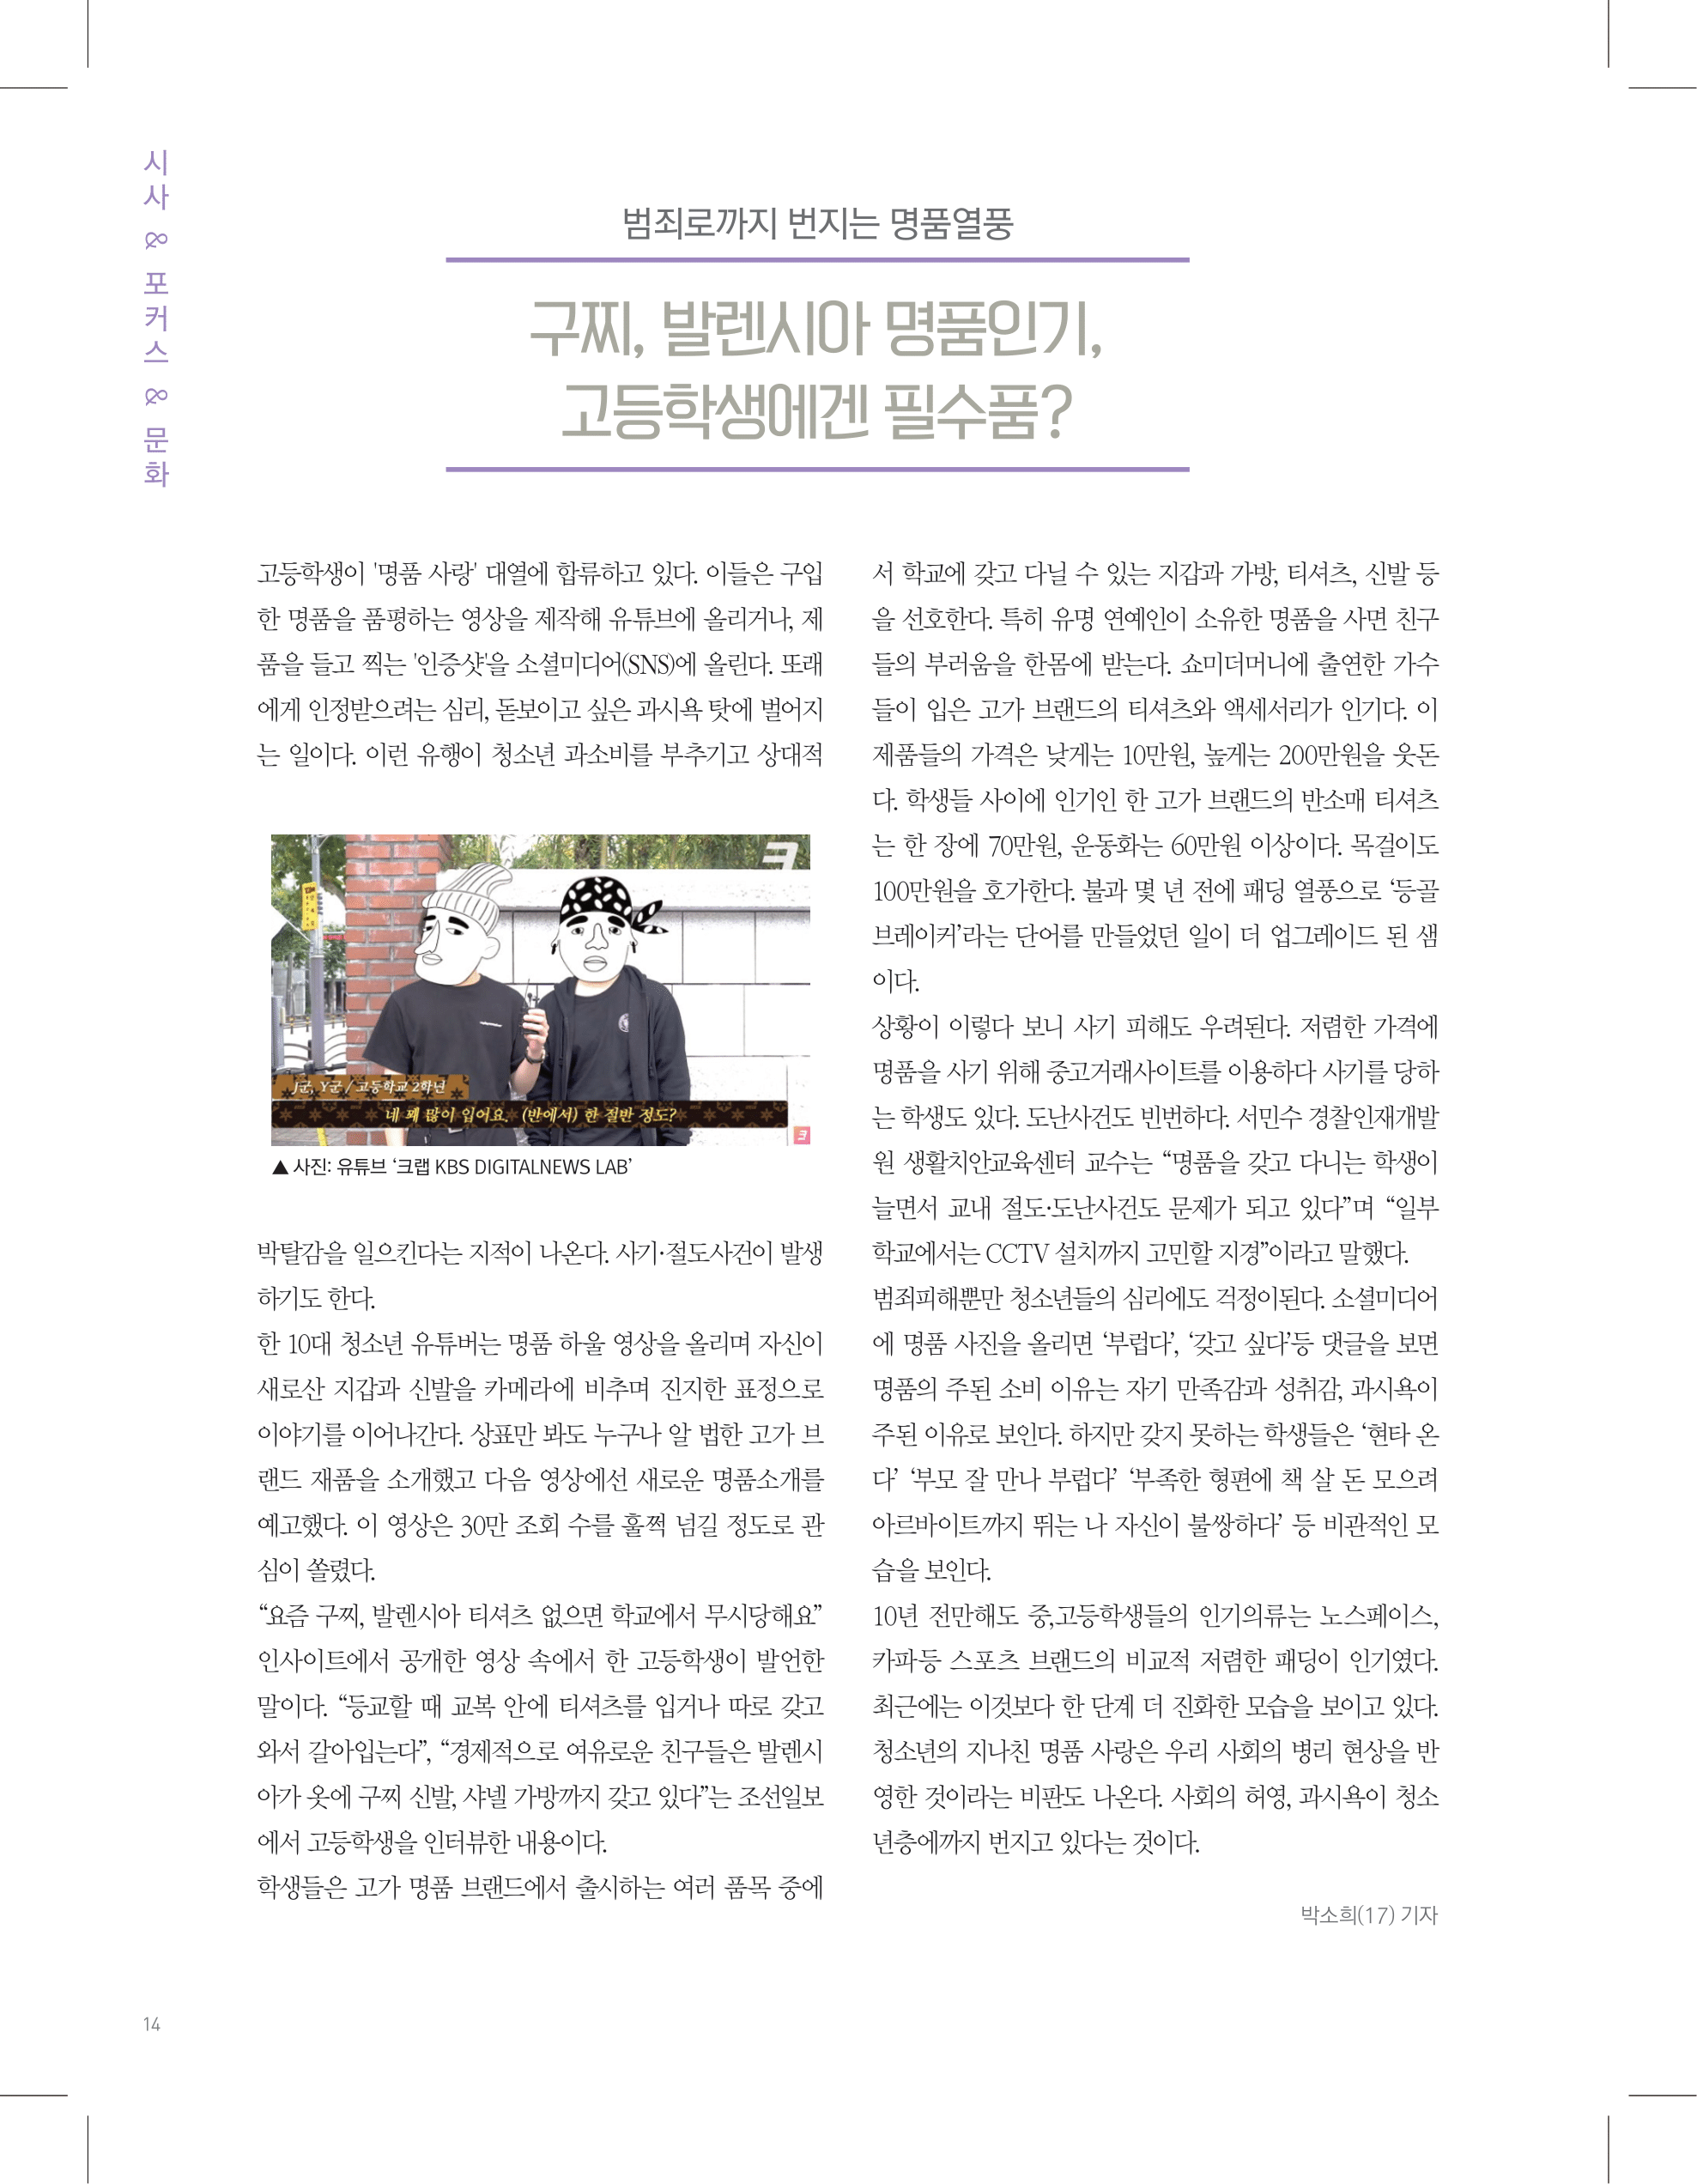 뜻새김 신문 74호 14